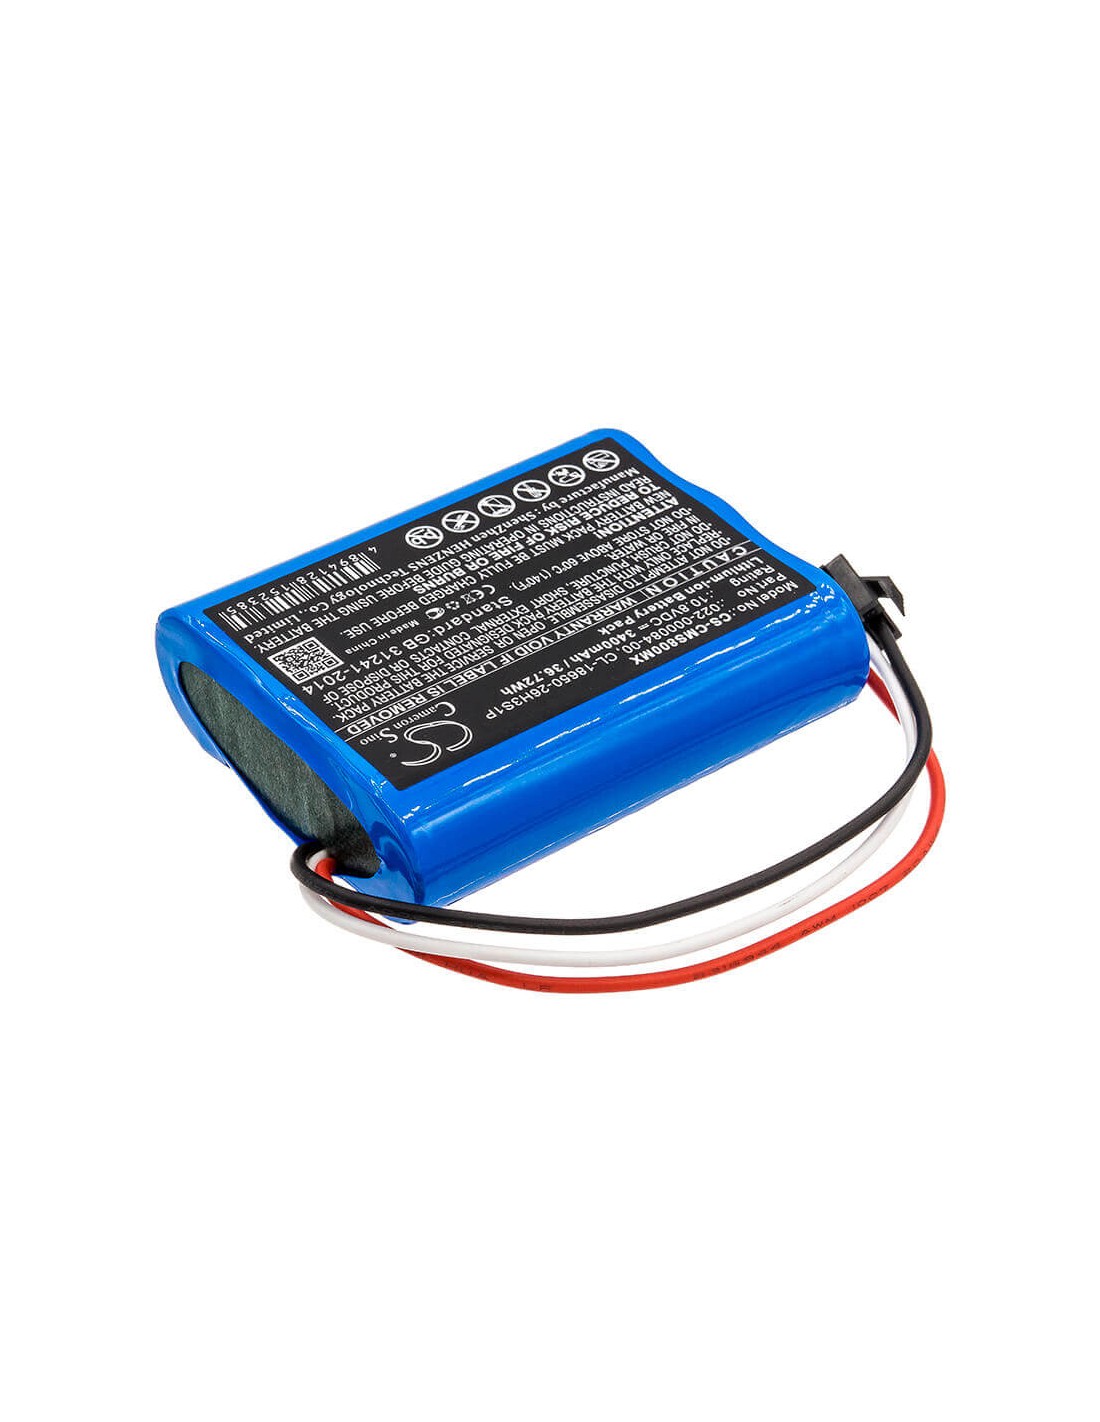 Battery for Cardiomonitor, Comen Star 8000, Comen Star 8000 E, Comen 10.8V, 3400mAh - 36.72Wh